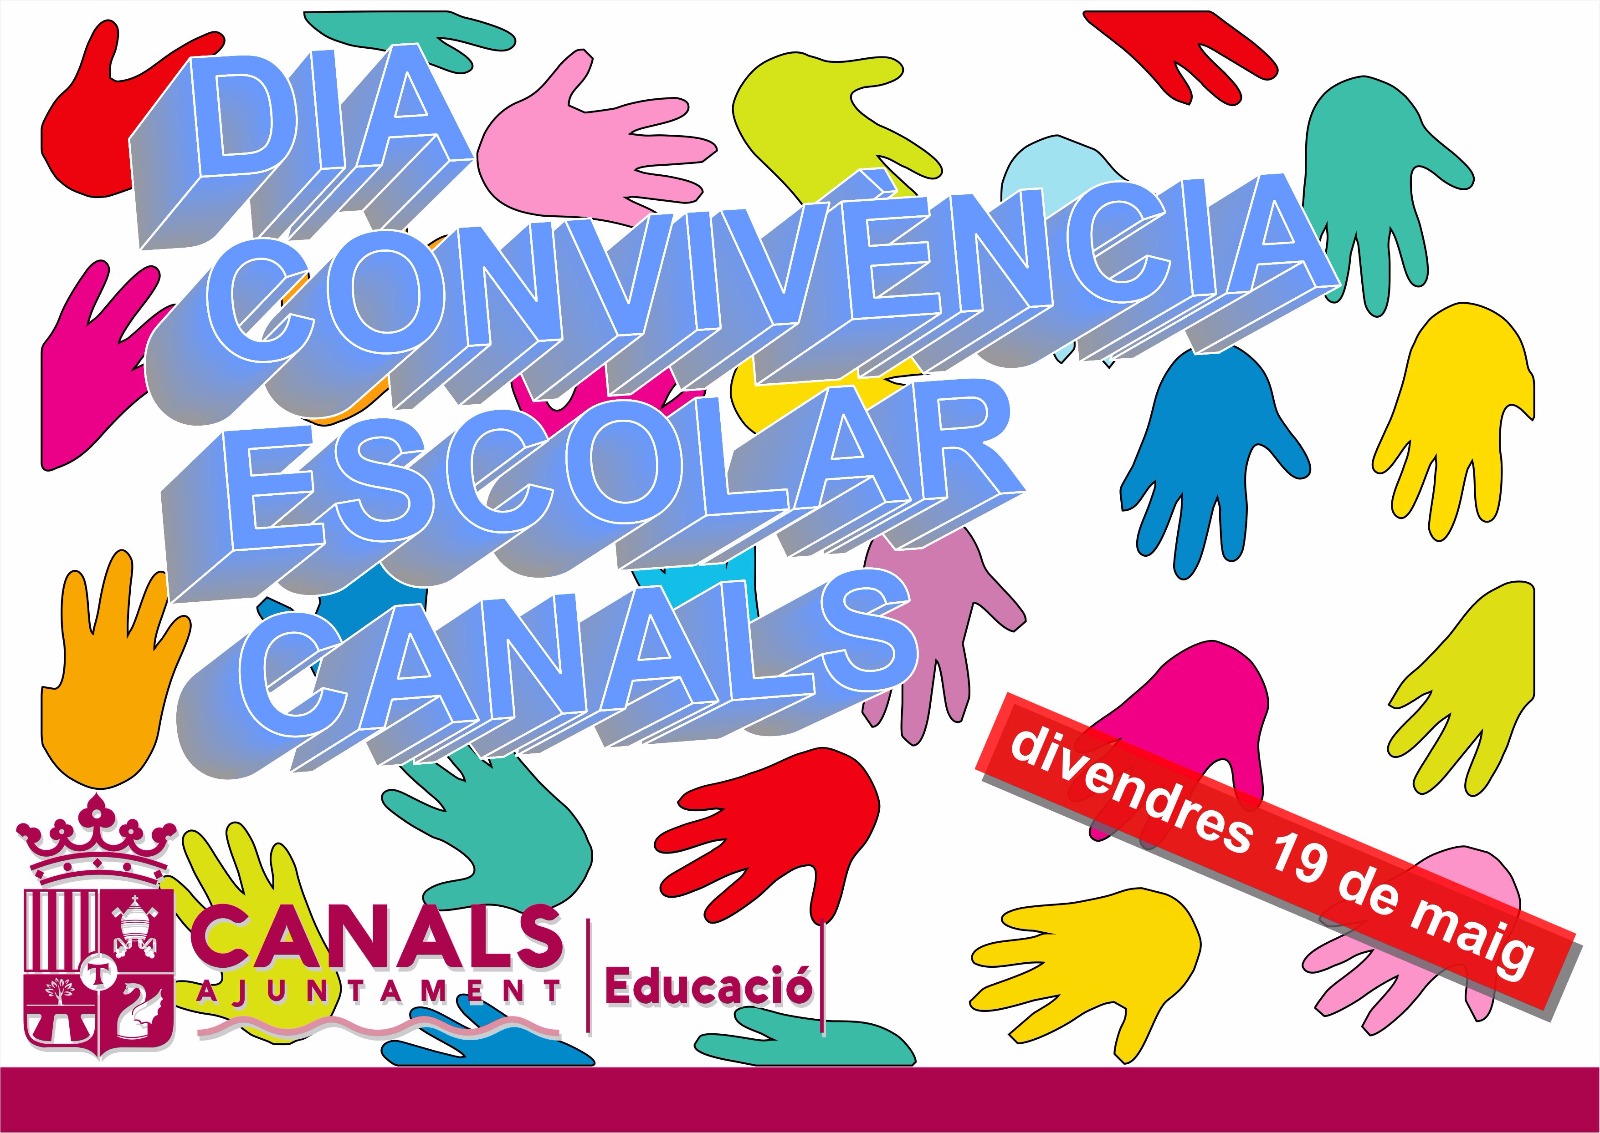 2017.05.17 II Jornada Convivència Escolar. Ajuntament de Canals